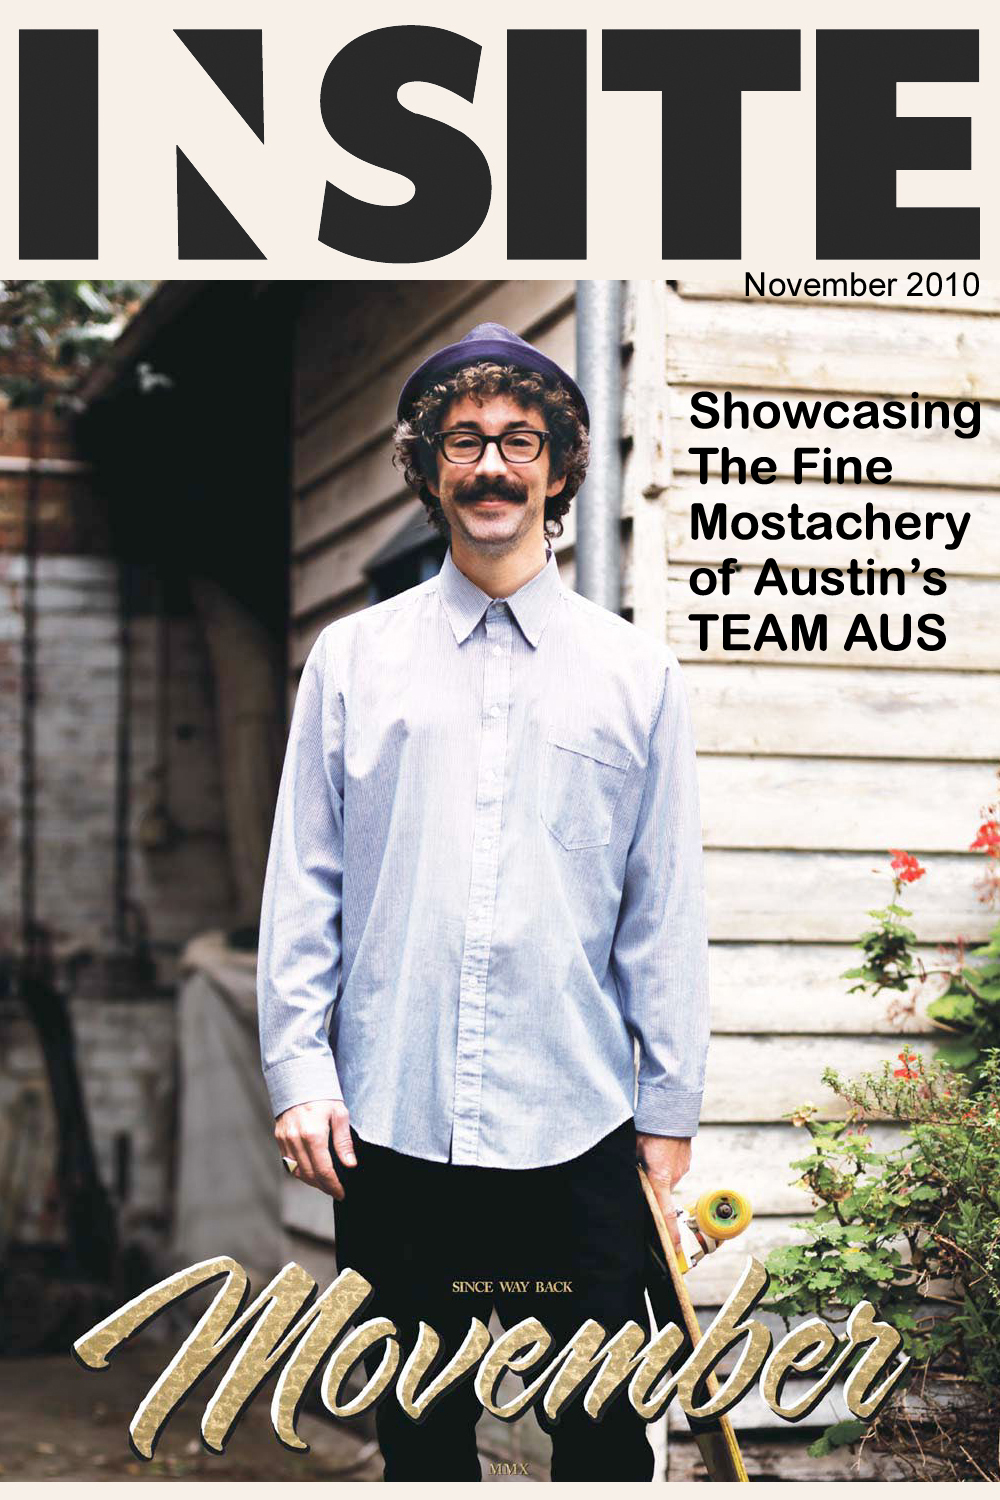 November 2010 - cover: Movember